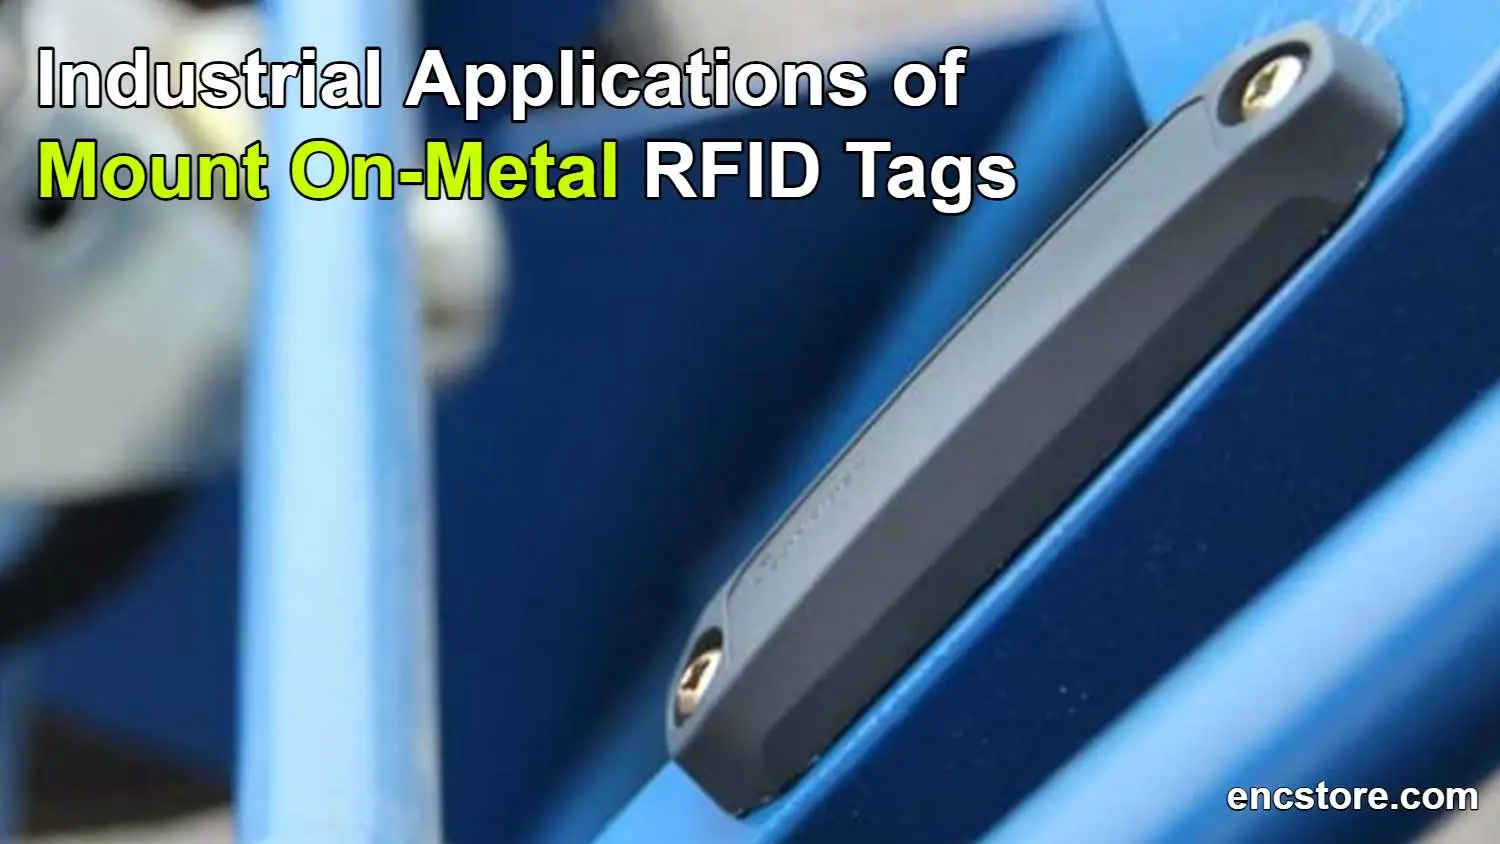 Mount On-Metal RFID Tags